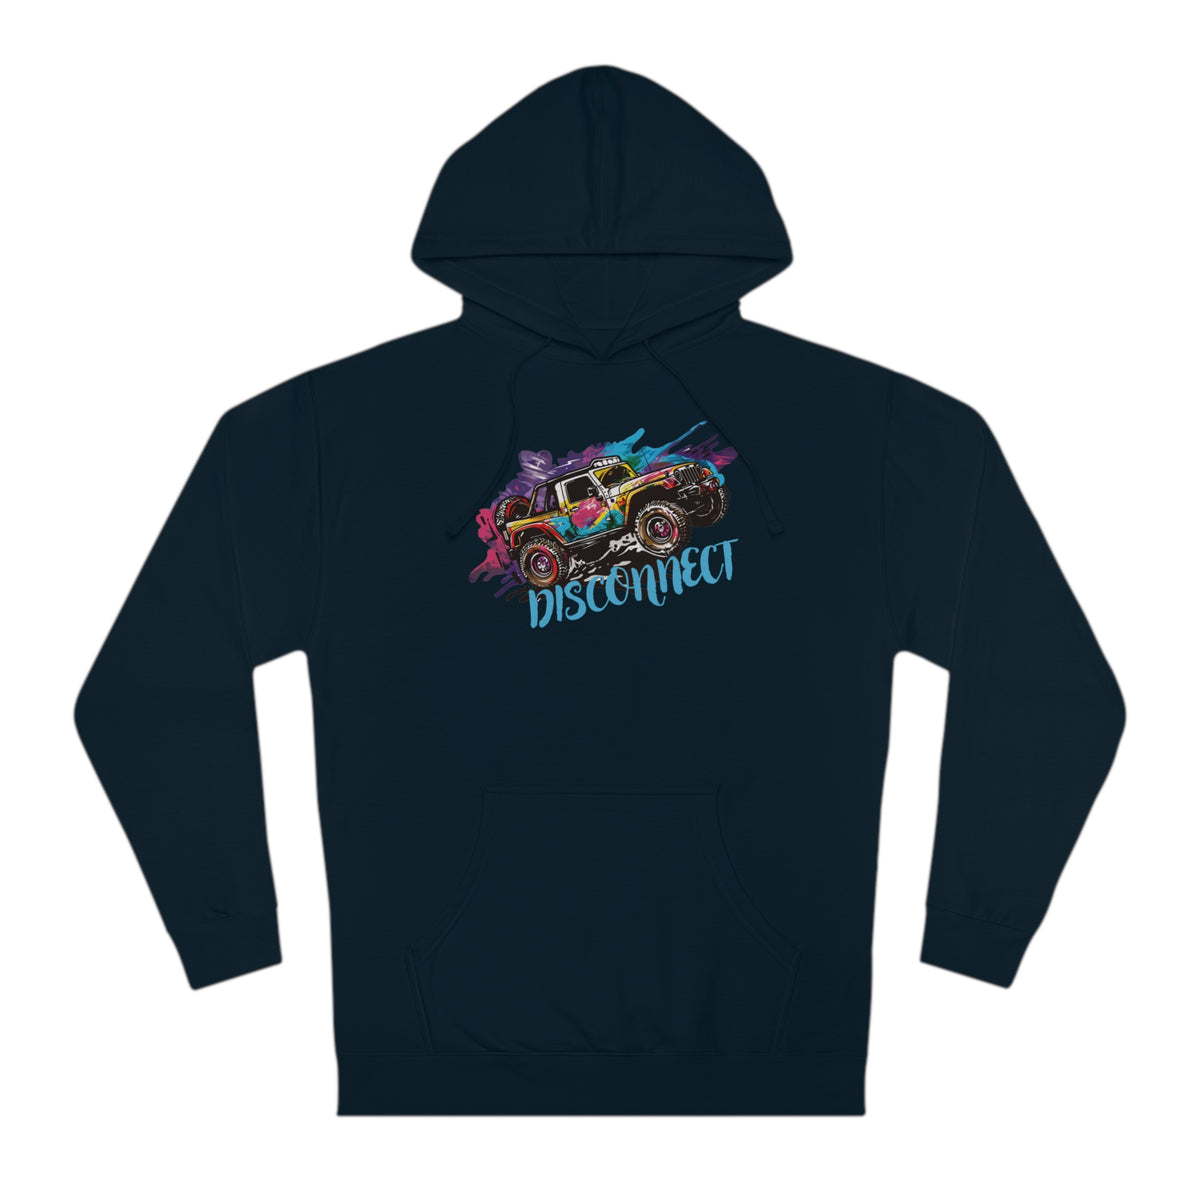 "Disconnect" Off-Roading Hoodie/Hooded Sweatshirt